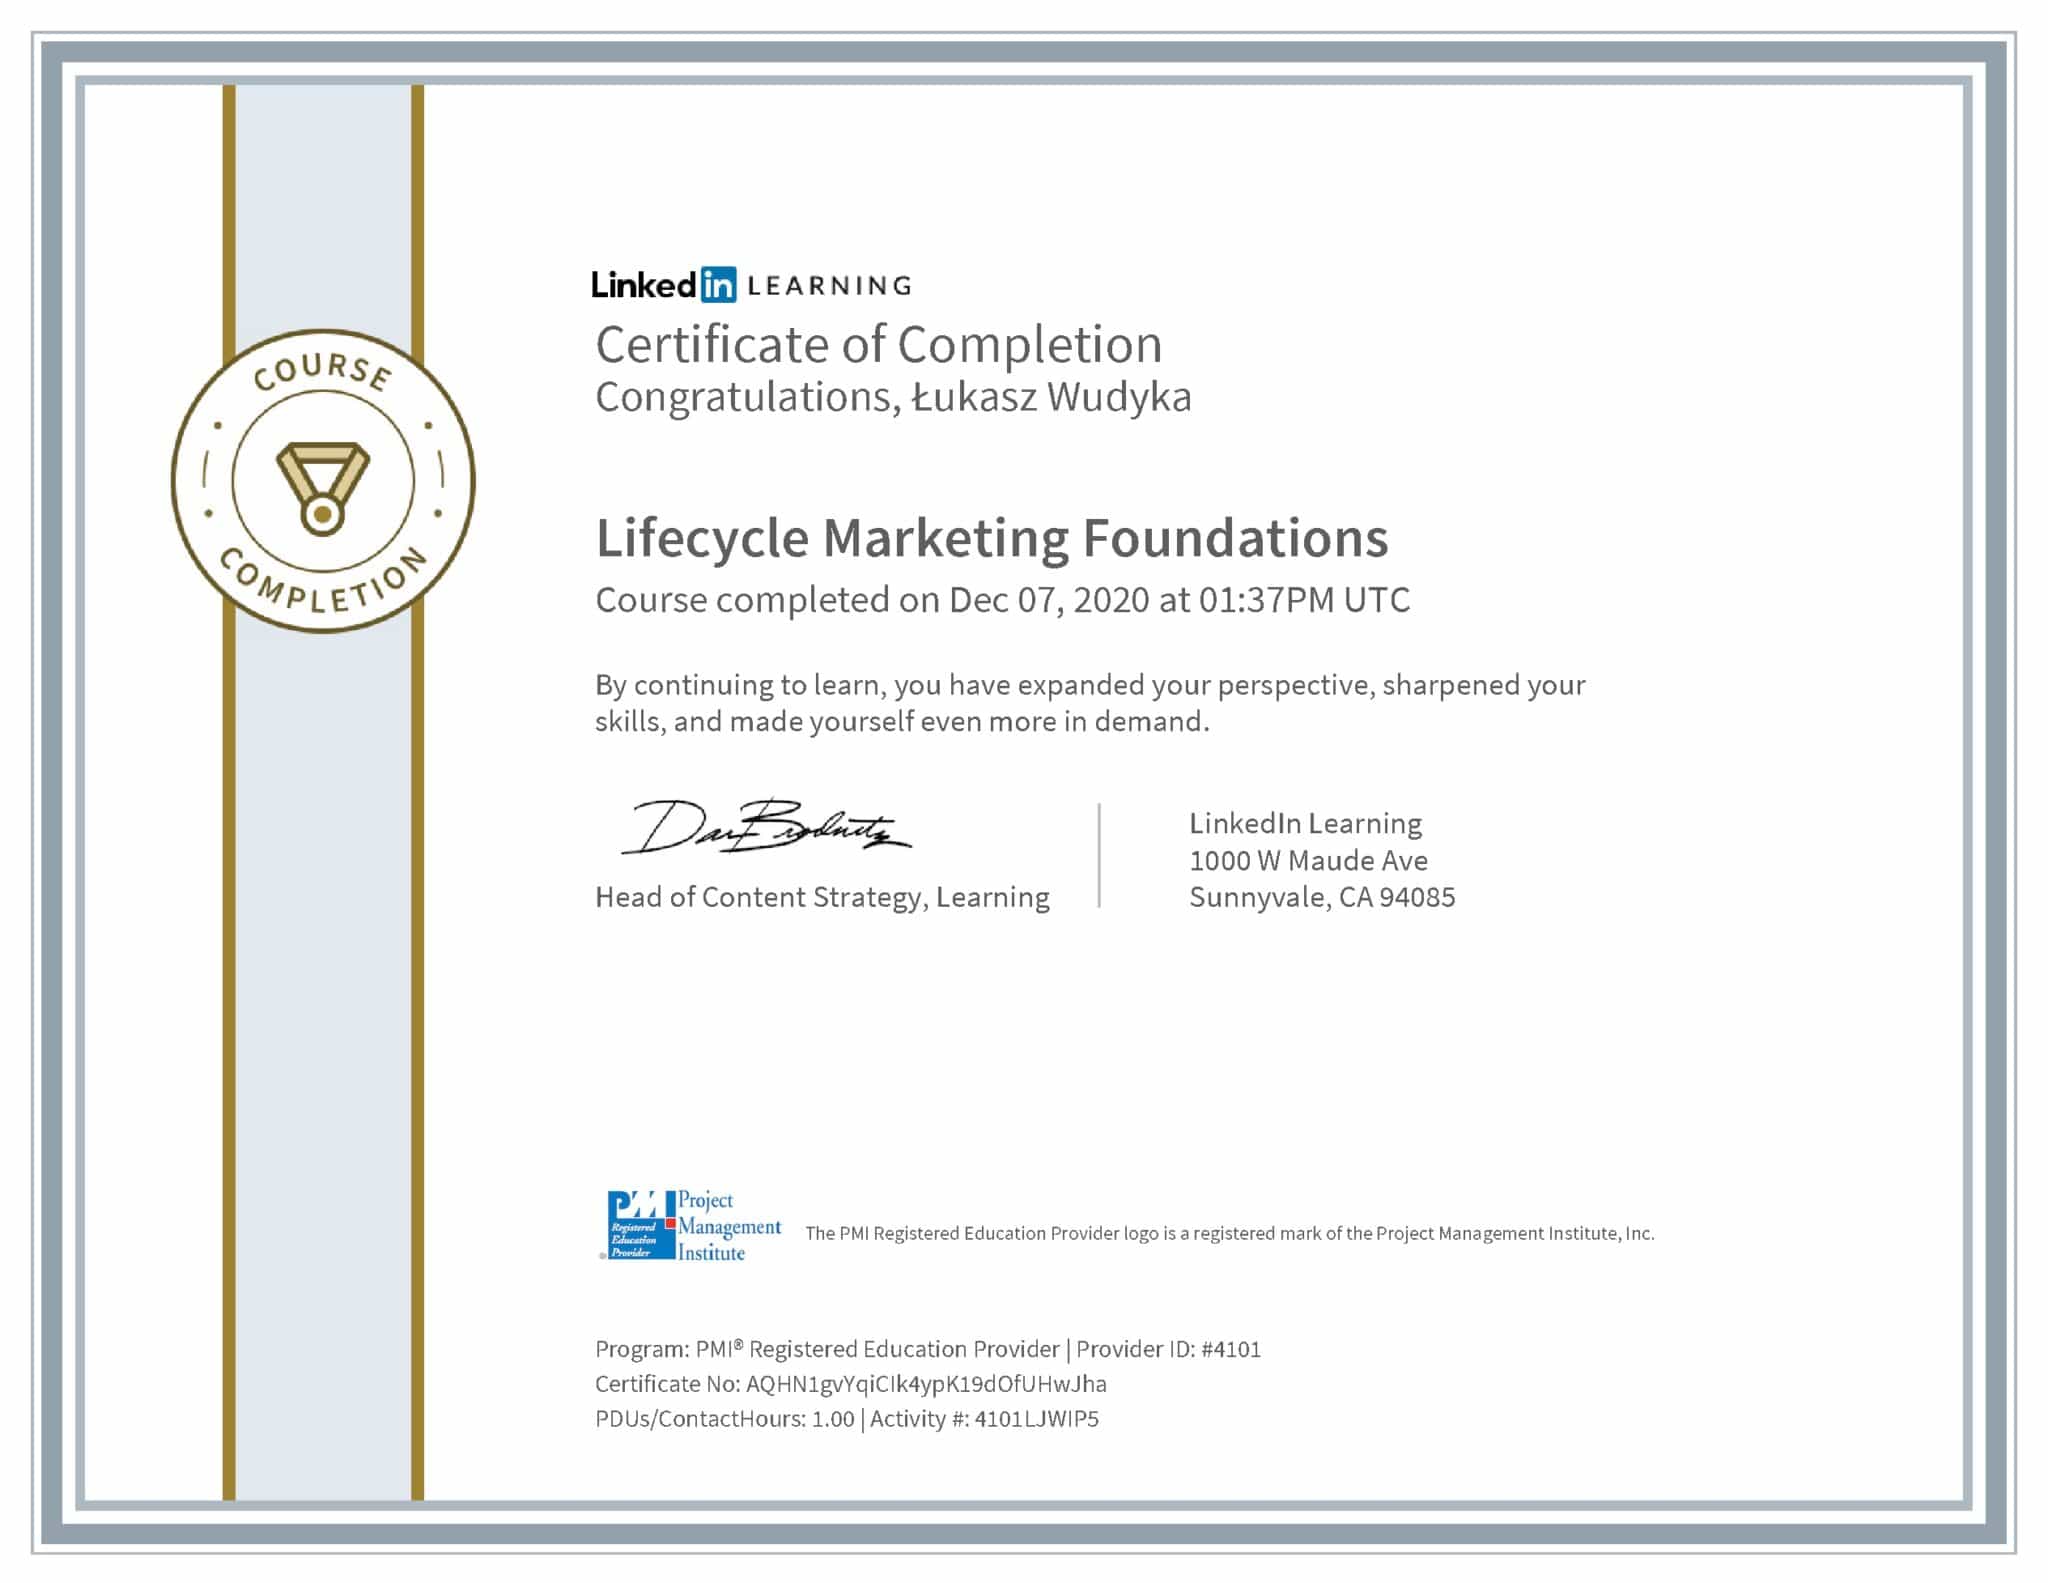 Łukasz Wudyka certyfikat LinkedIn Lifecycle Marketing Foundations PMI